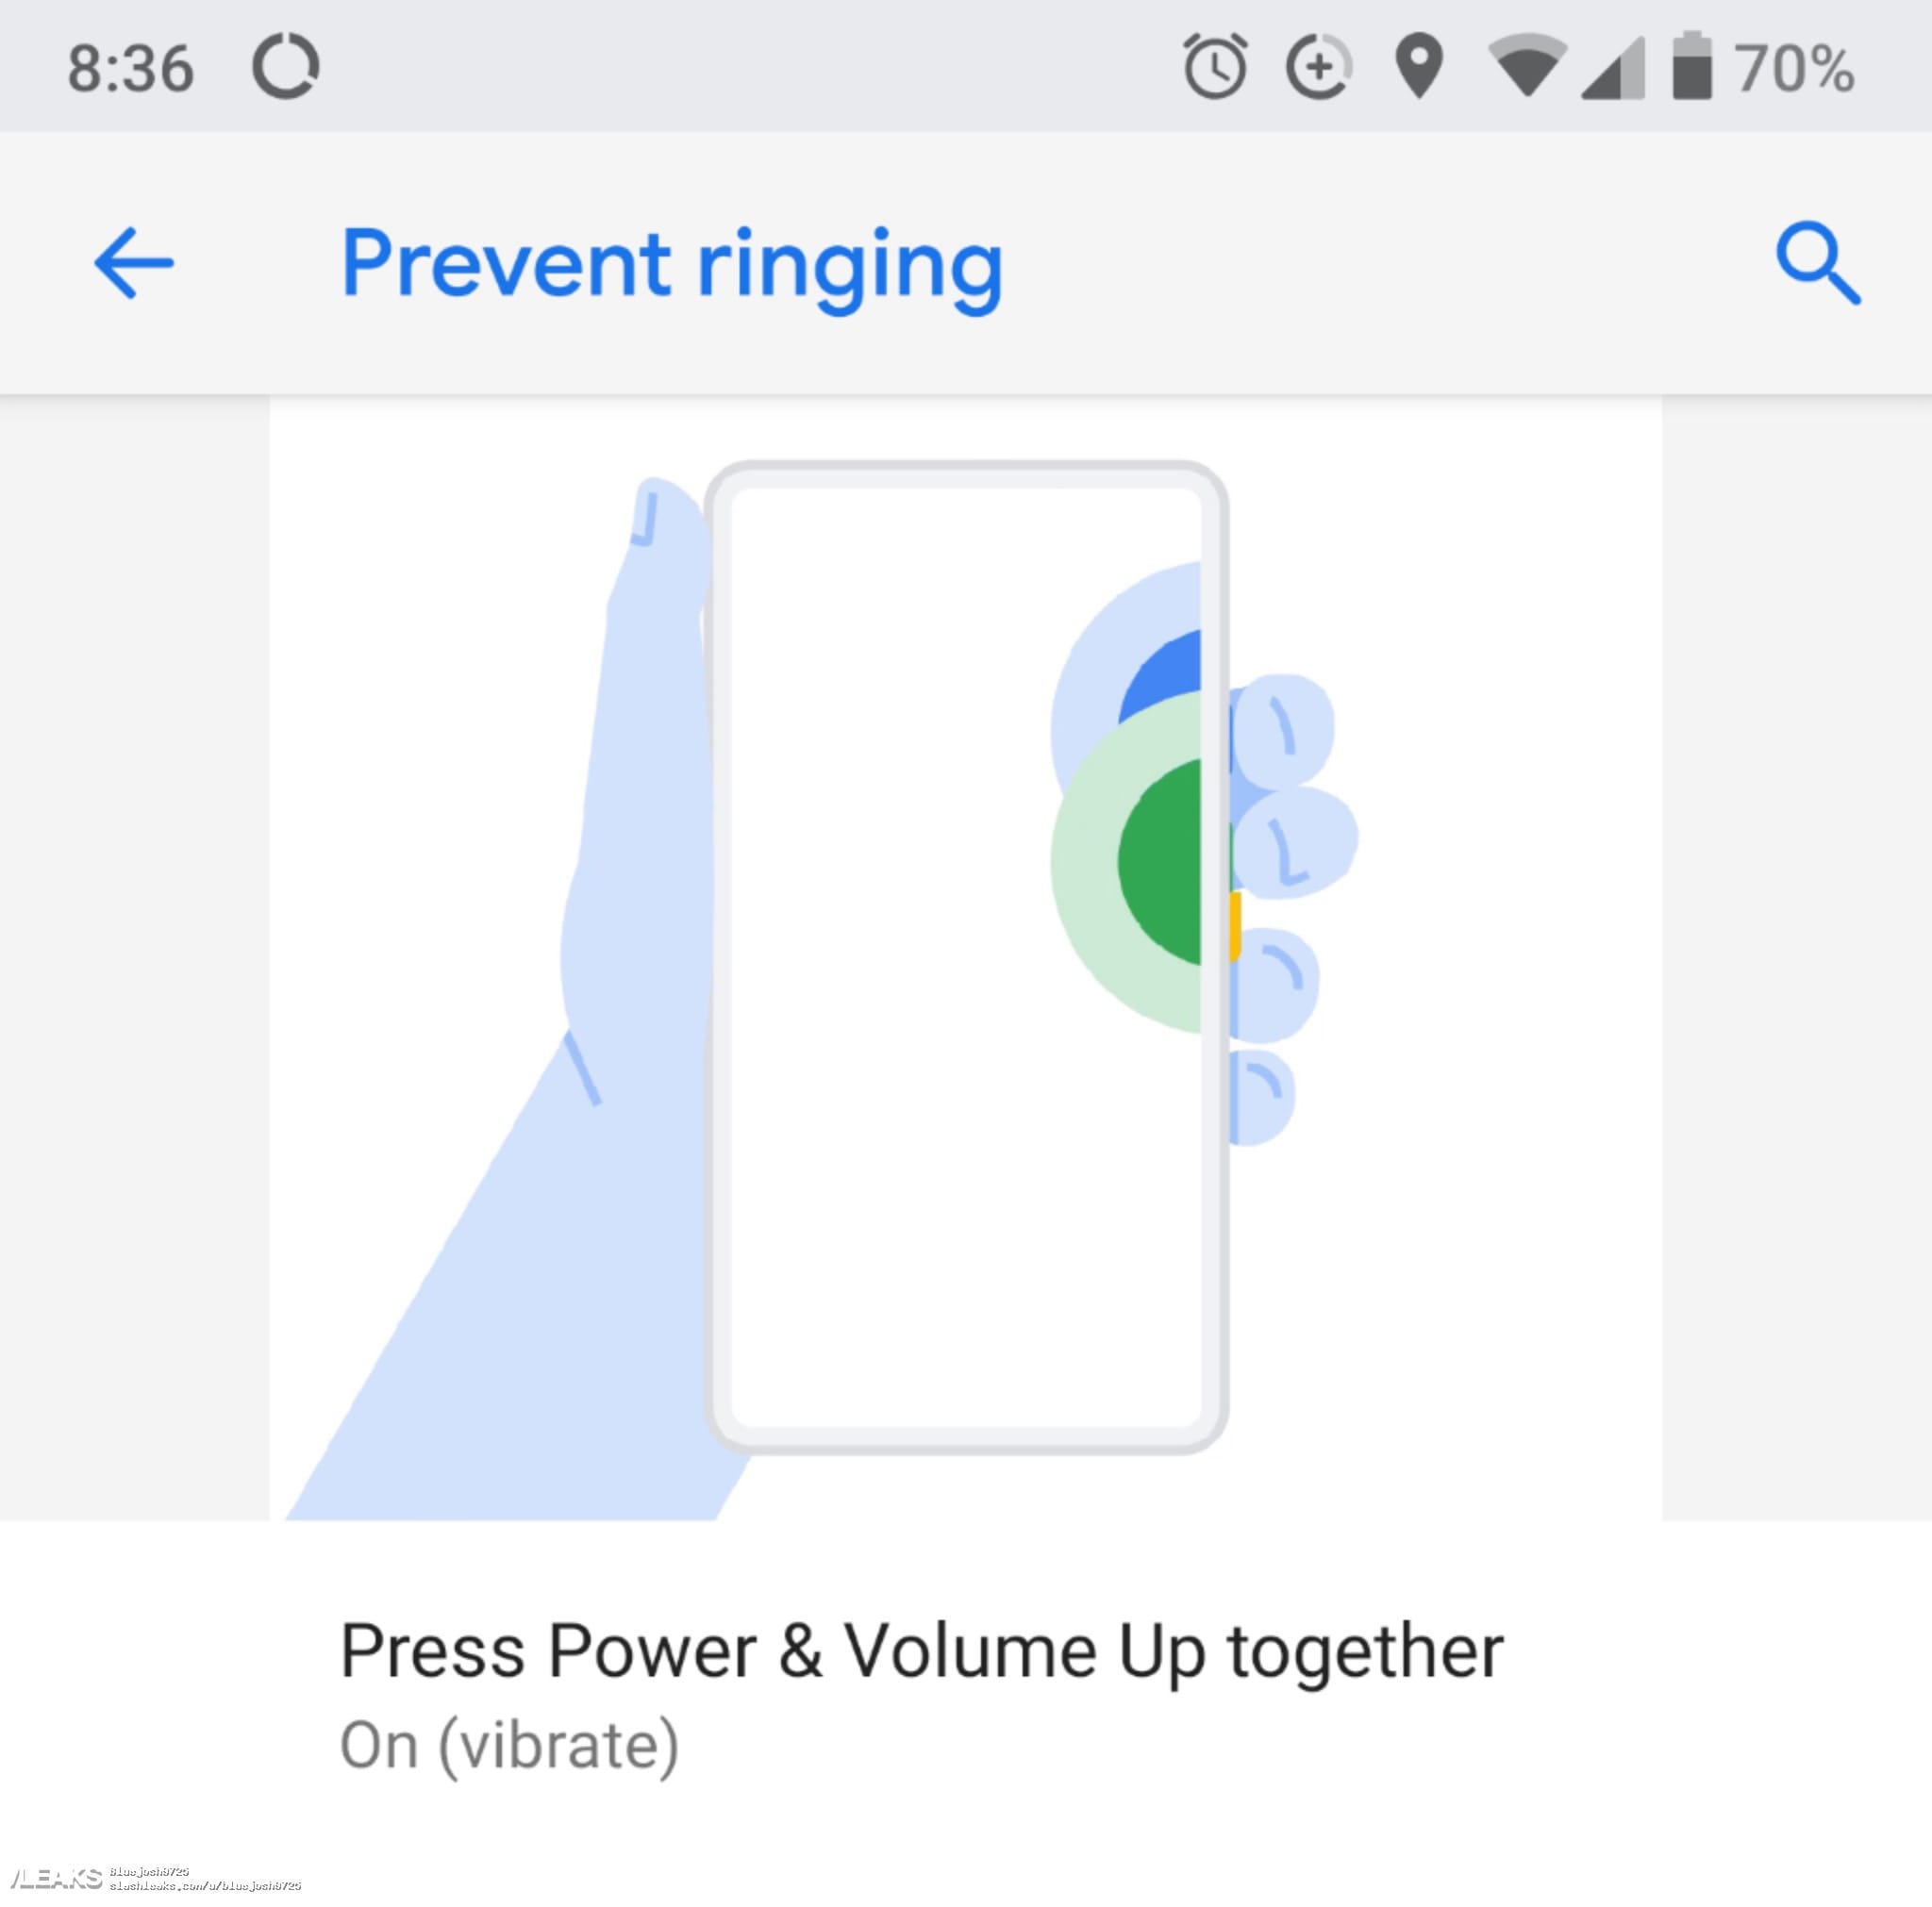 Смартфон Google Pixel 3 получит абсолютно безрамочный экран